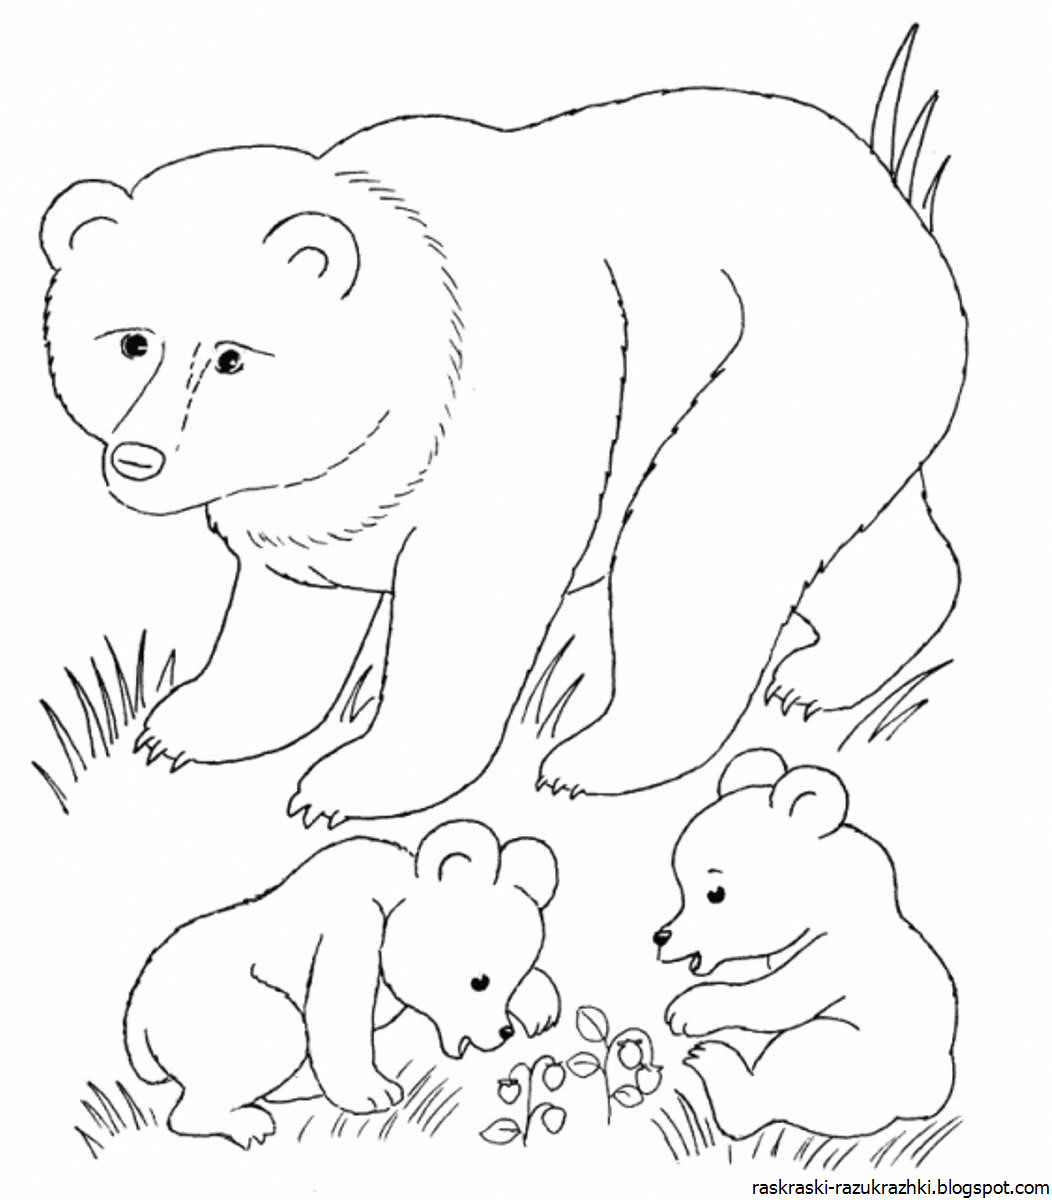 Раскраски животных для детей. Медведь раскраска. Раскраска "Дикие животные". Лесные животные раскраска для детей. Распечатать раскраску диких животных